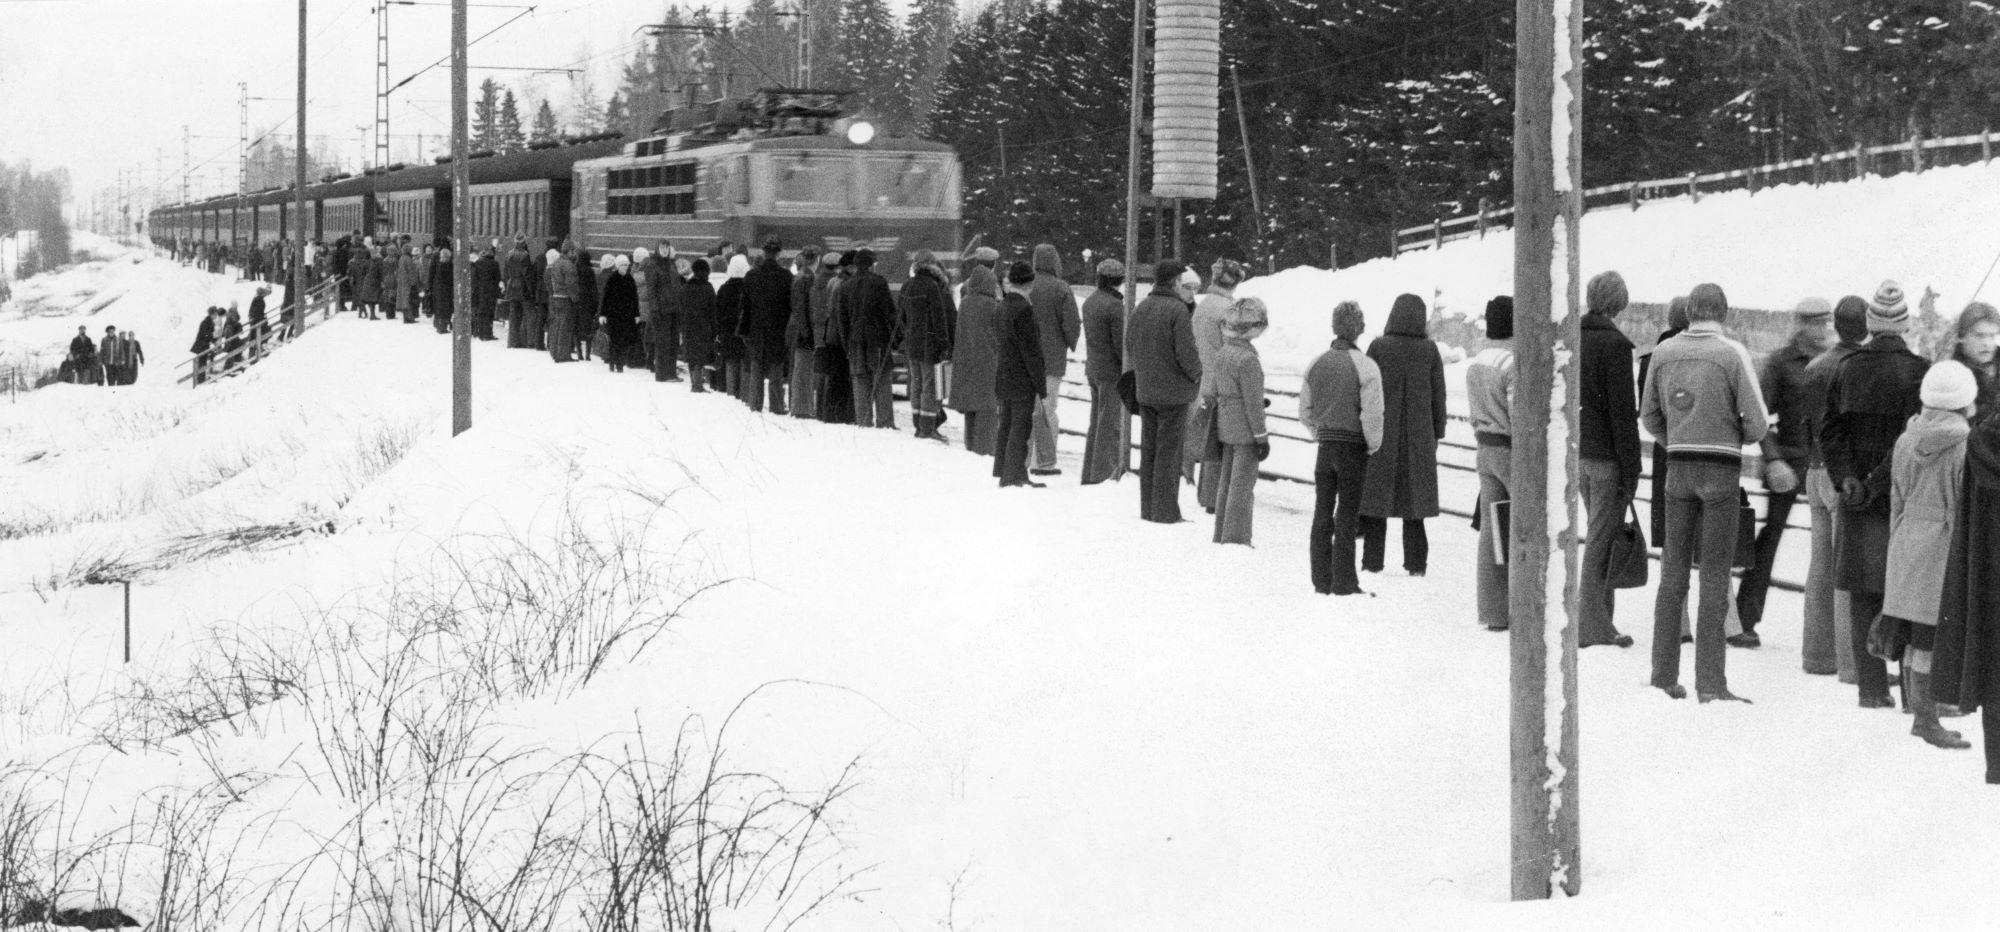 Talvinen näkymä. Juna saapumassa seisakkeelle, jossa seisoo runsaasti ihmisiä.